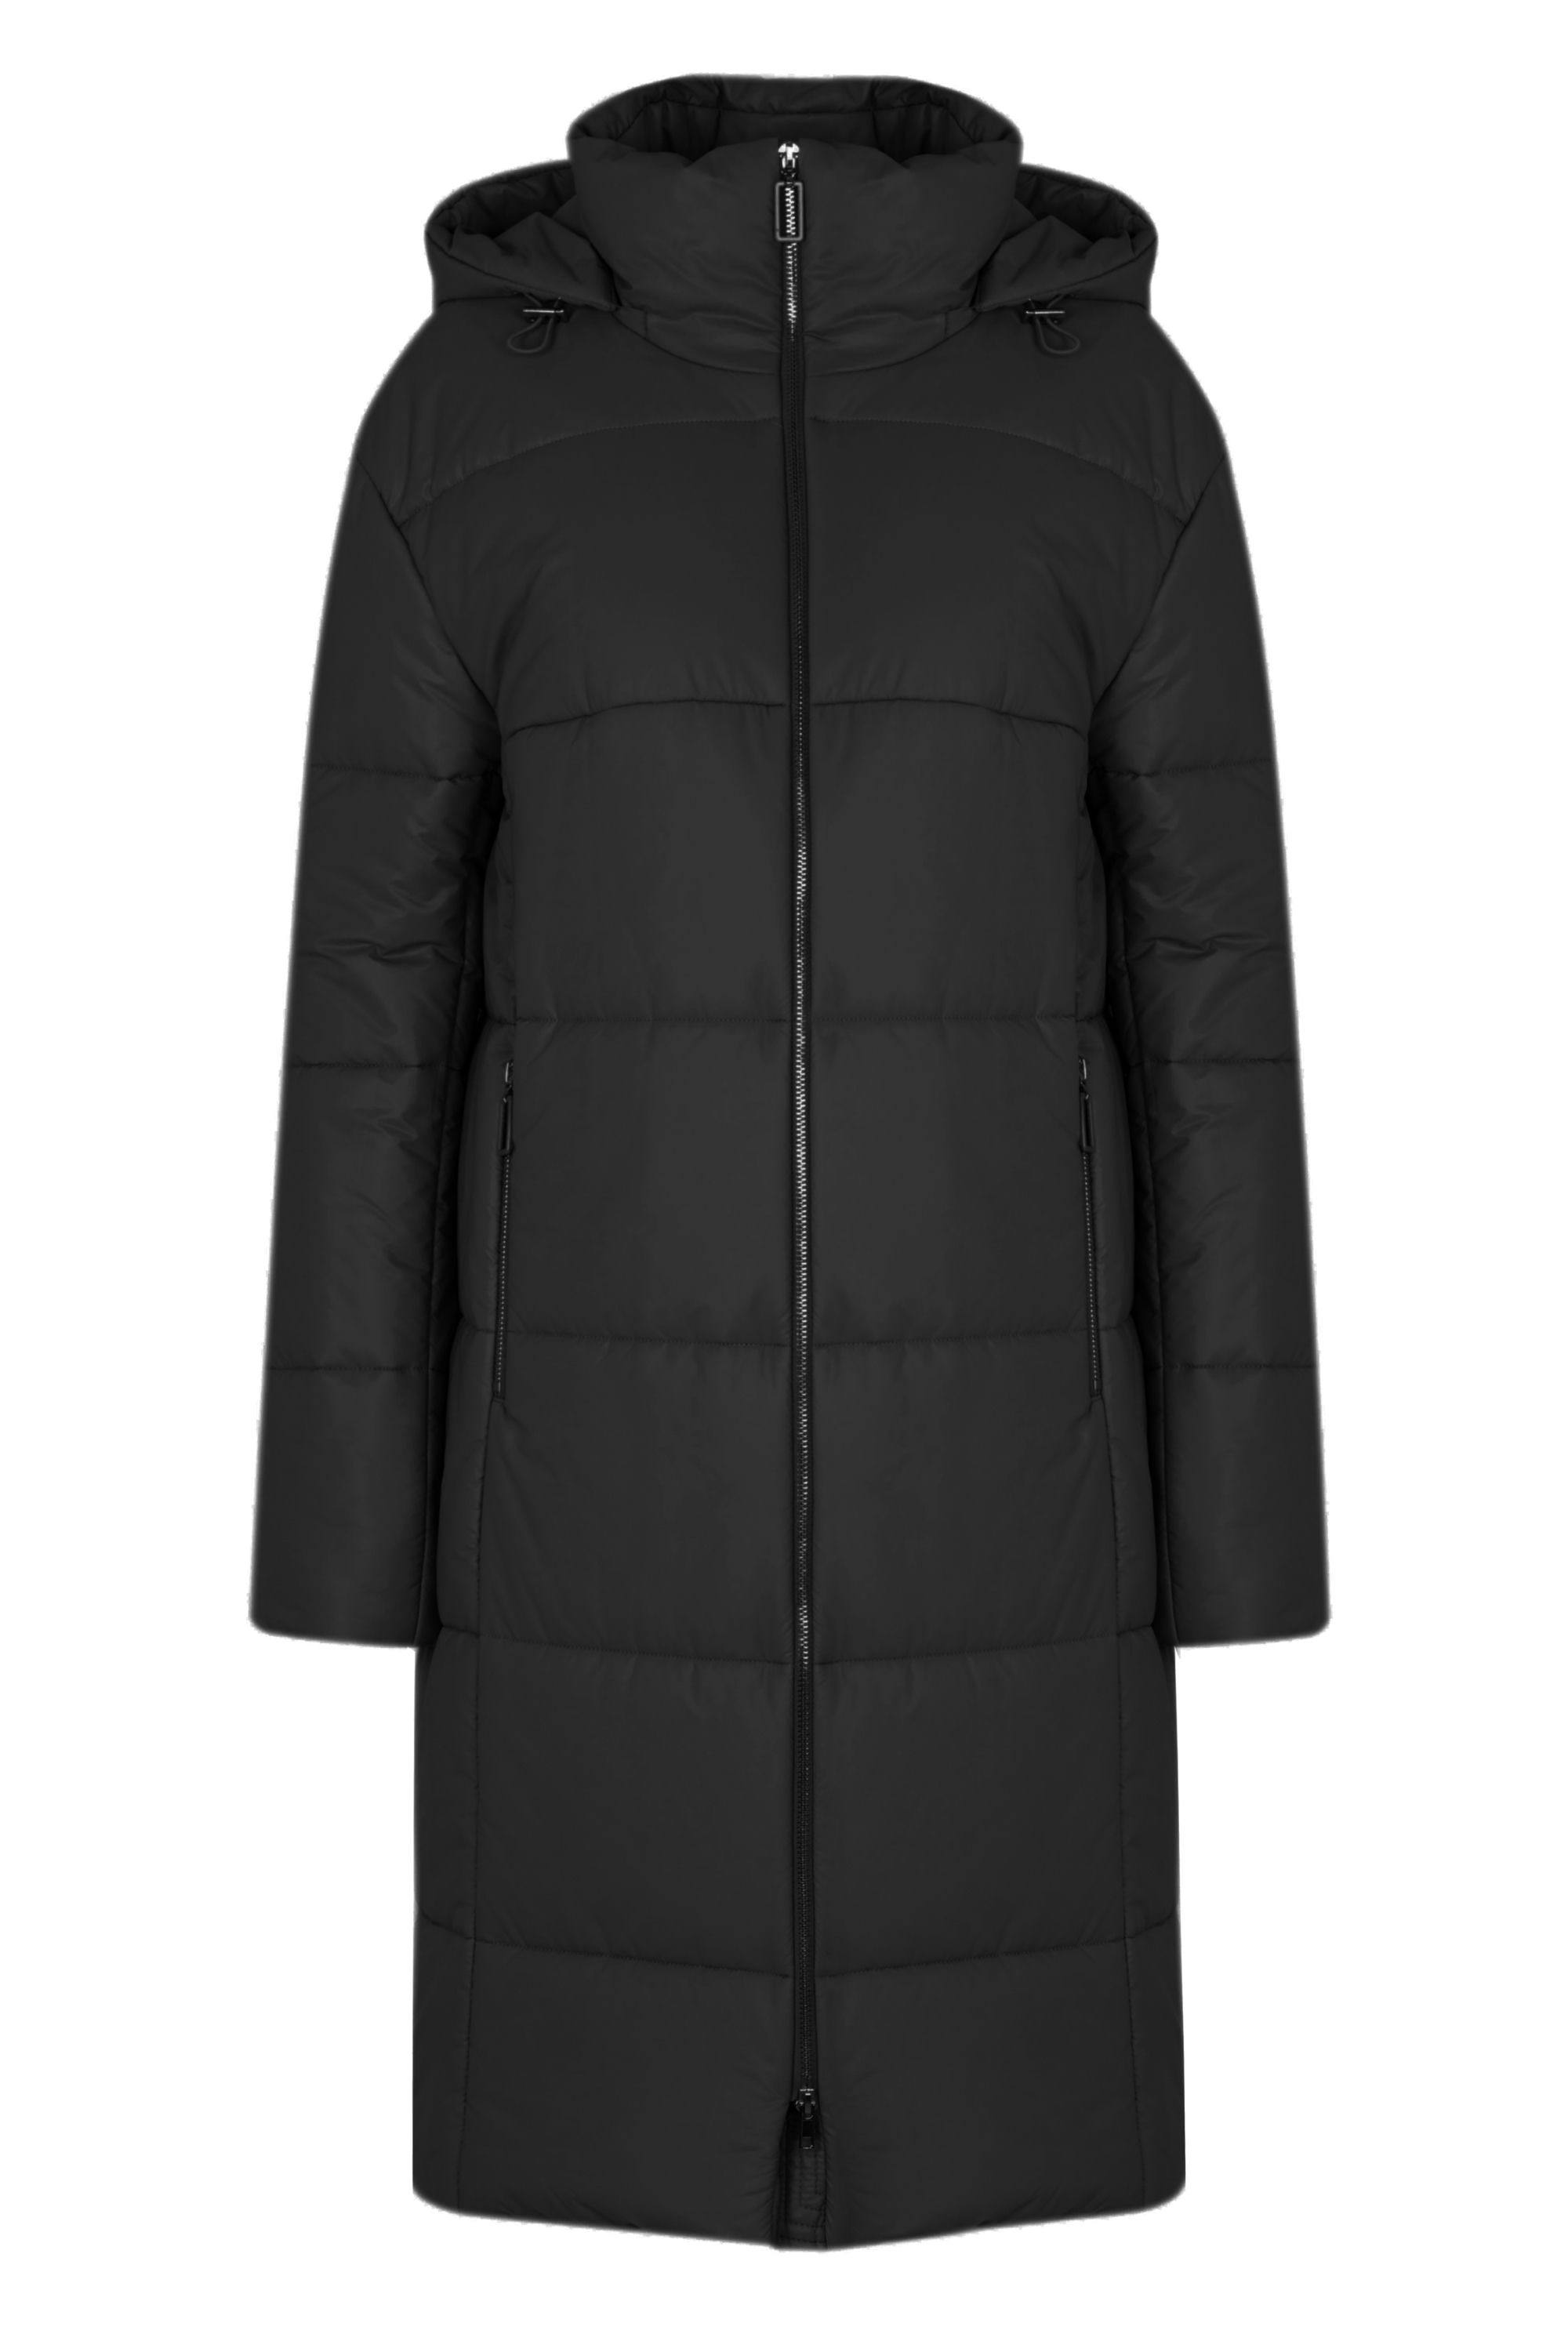 Пальто женское плащевое утепленное 5-12327-1. Фото 1.